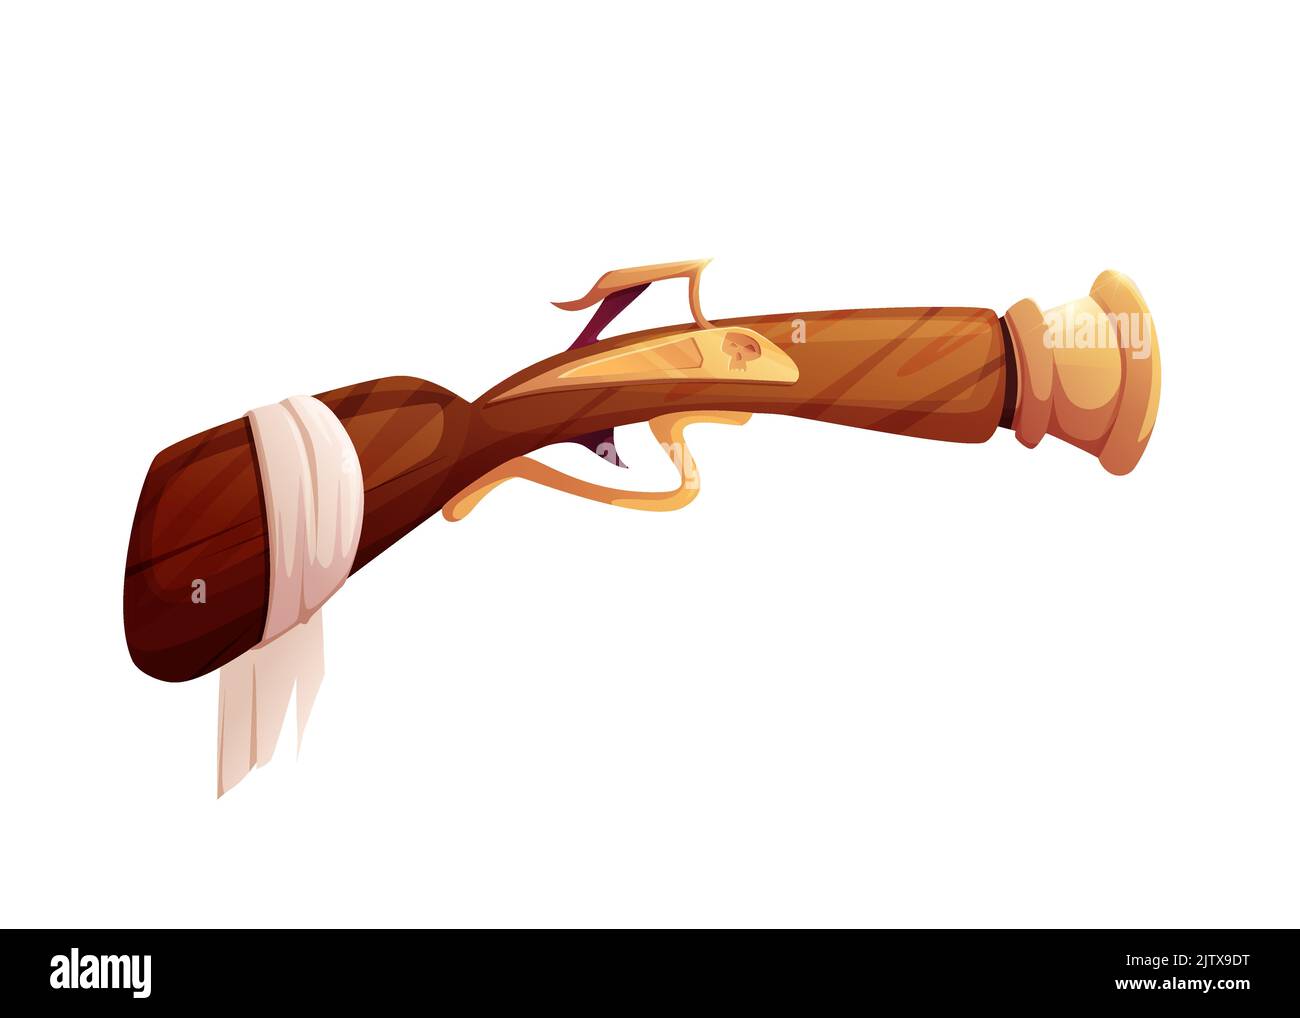 Pirate pistol or revolver. Old flintlock. Musket rifle. Cartoon vector illustration. Stock Vector